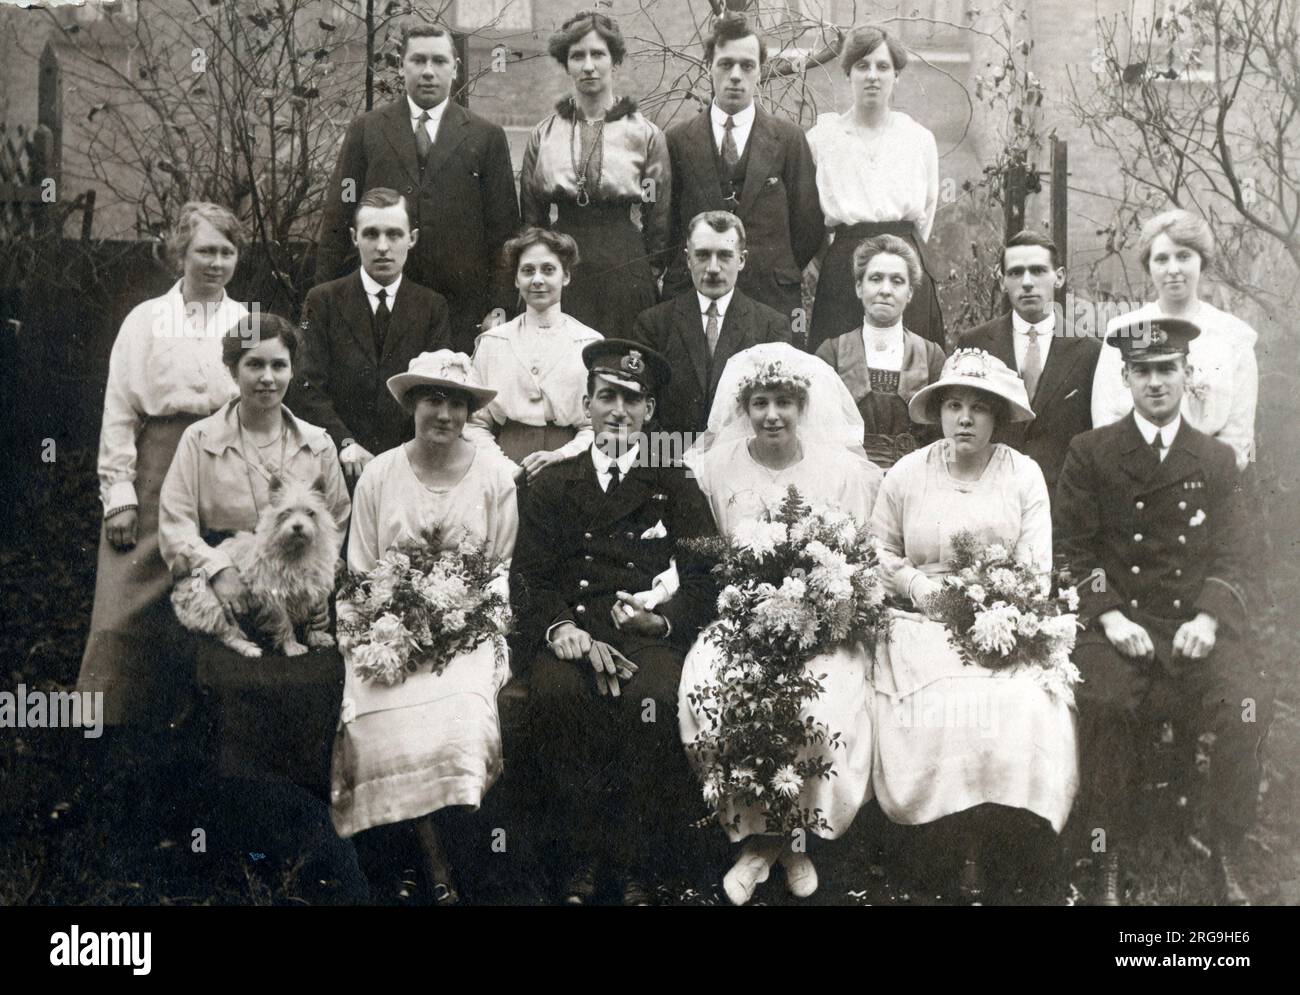 Ein Hochzeitsfoto der Gruppe nach WW1, aufgenommen in einem Vorstadtgarten. Stockfoto